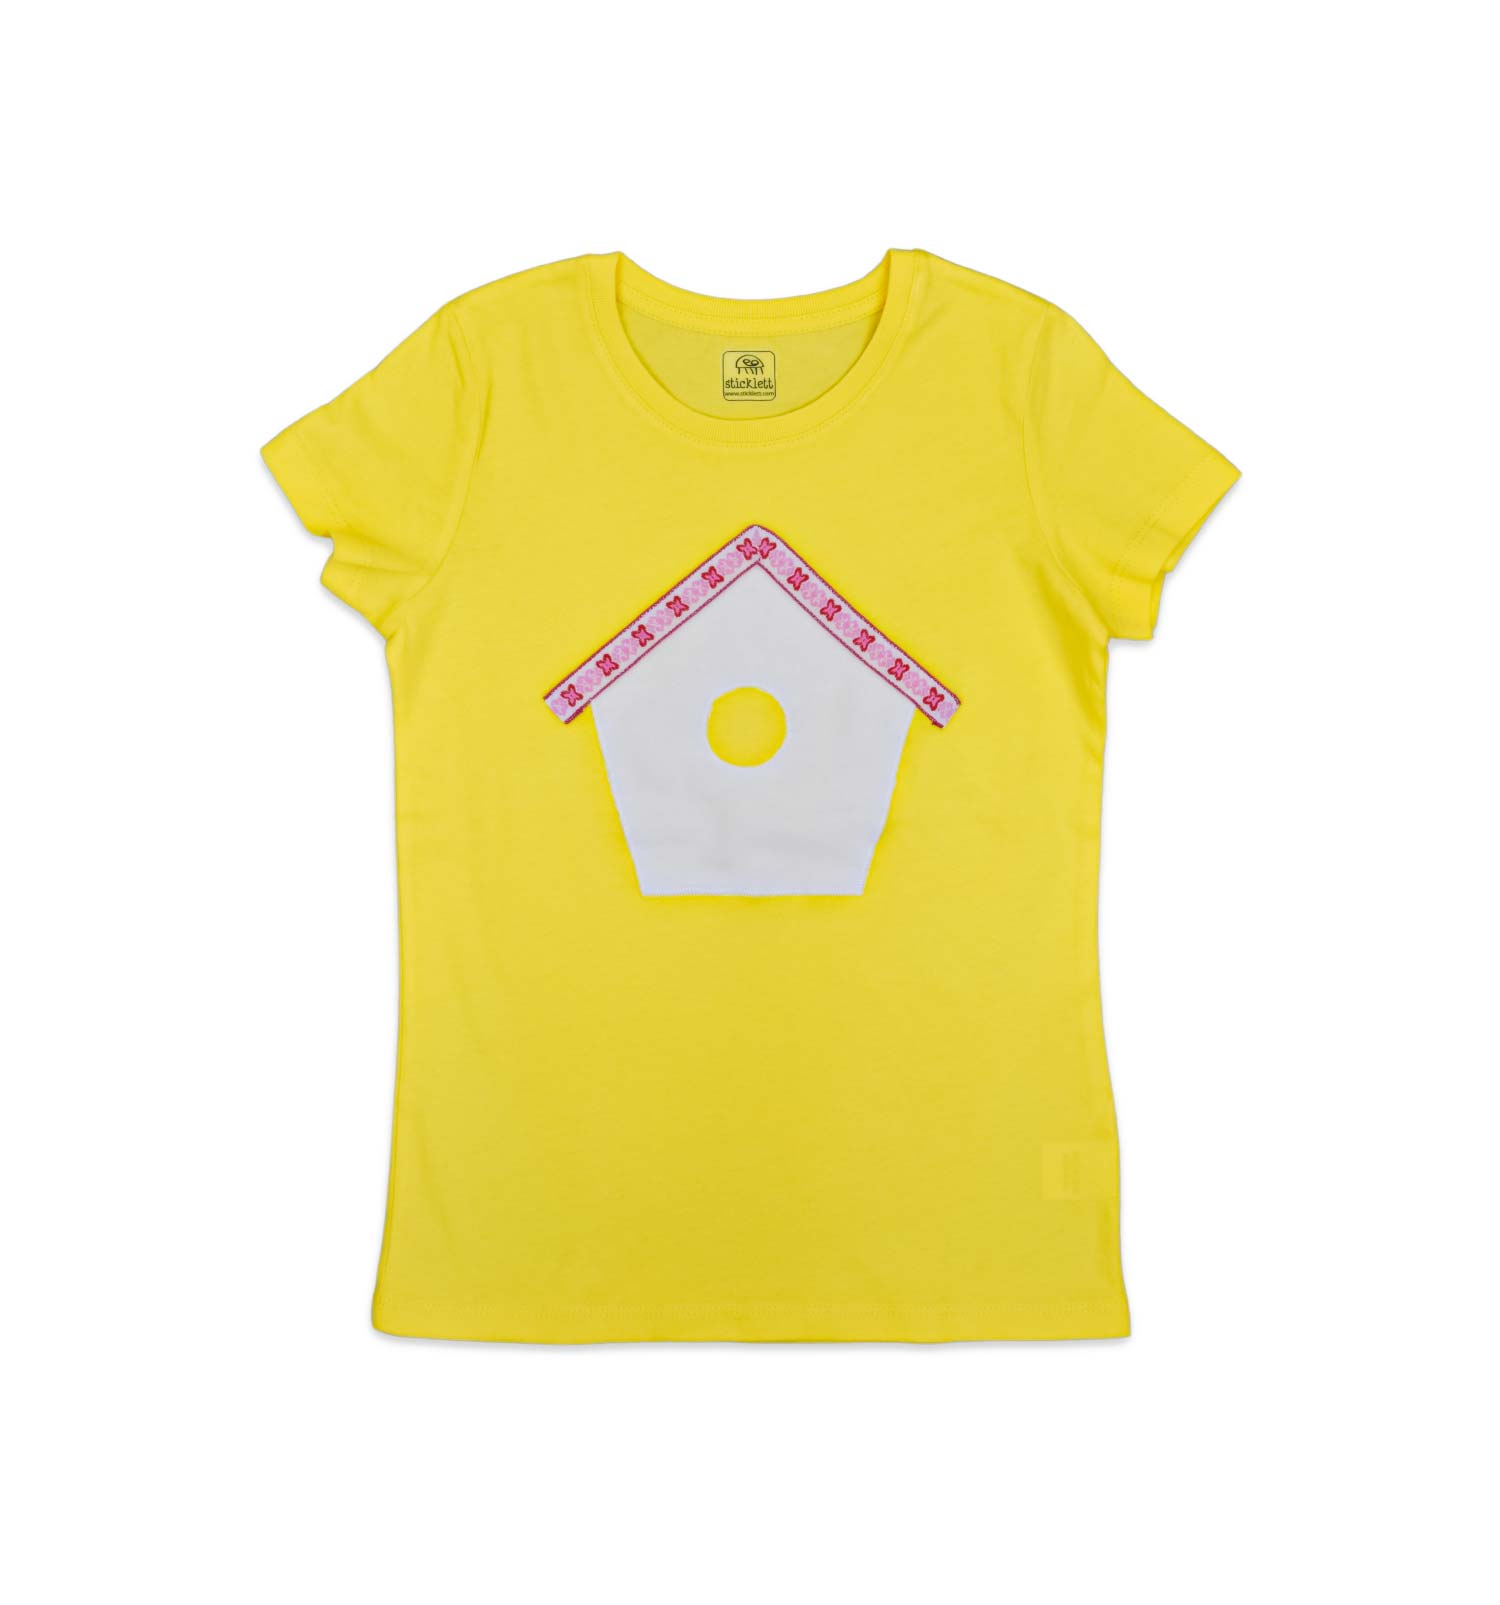 Mädchen T-Shirt mit Vogelhaus in gelb | sticklett Online Store.